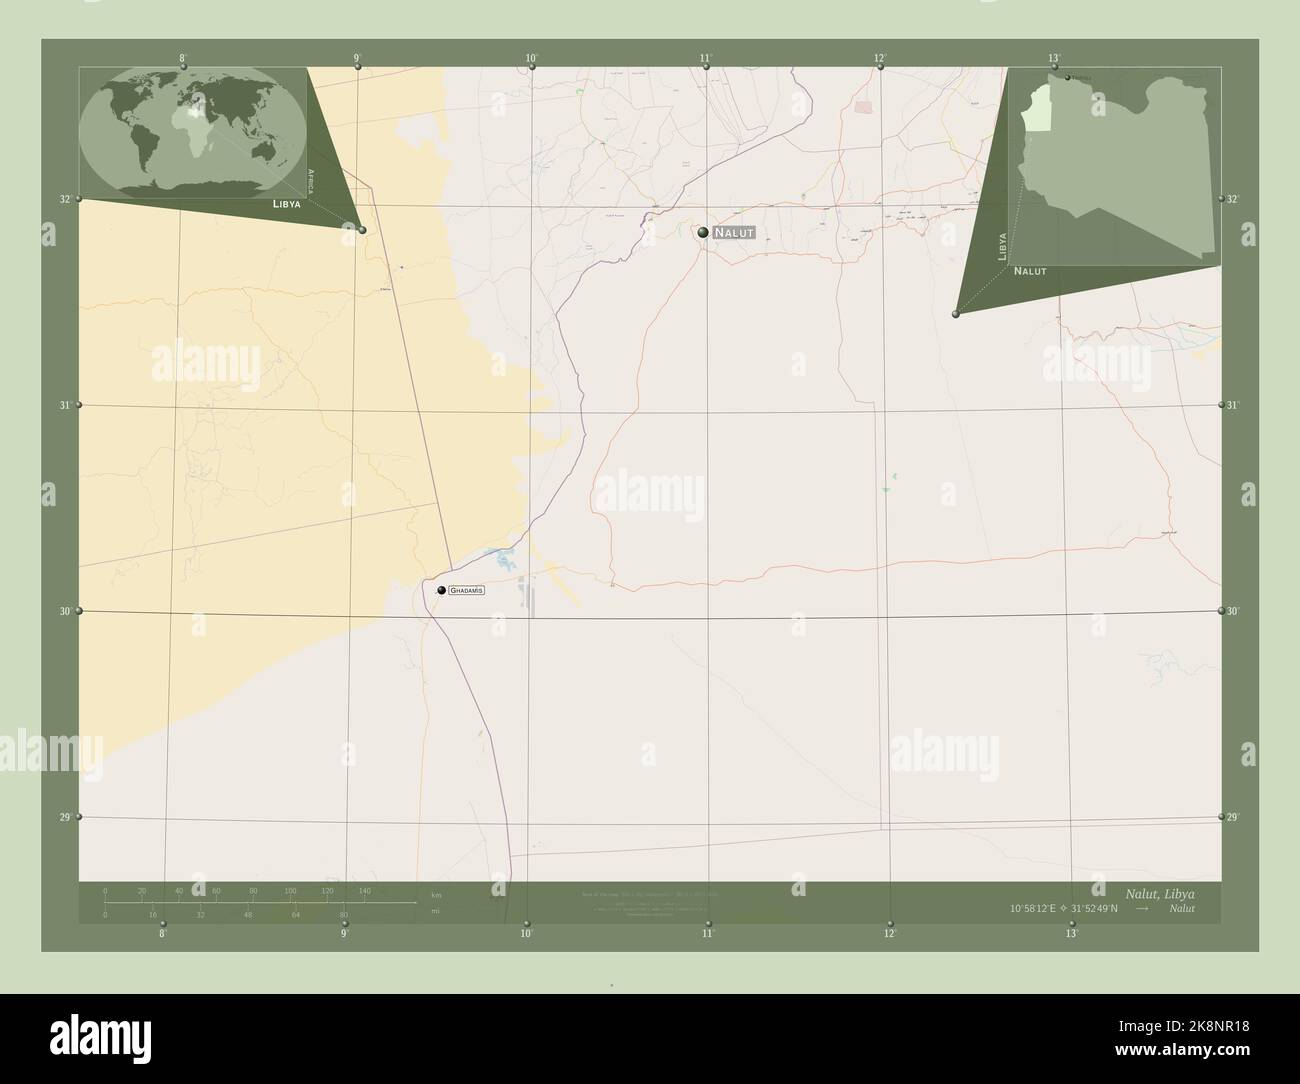 Nalut, Bezirk von Libyen. Öffnen Sie Die Straßenkarte. Orte und Namen der wichtigsten Städte der Region. Karten für zusätzliche Eckposition Stockfoto